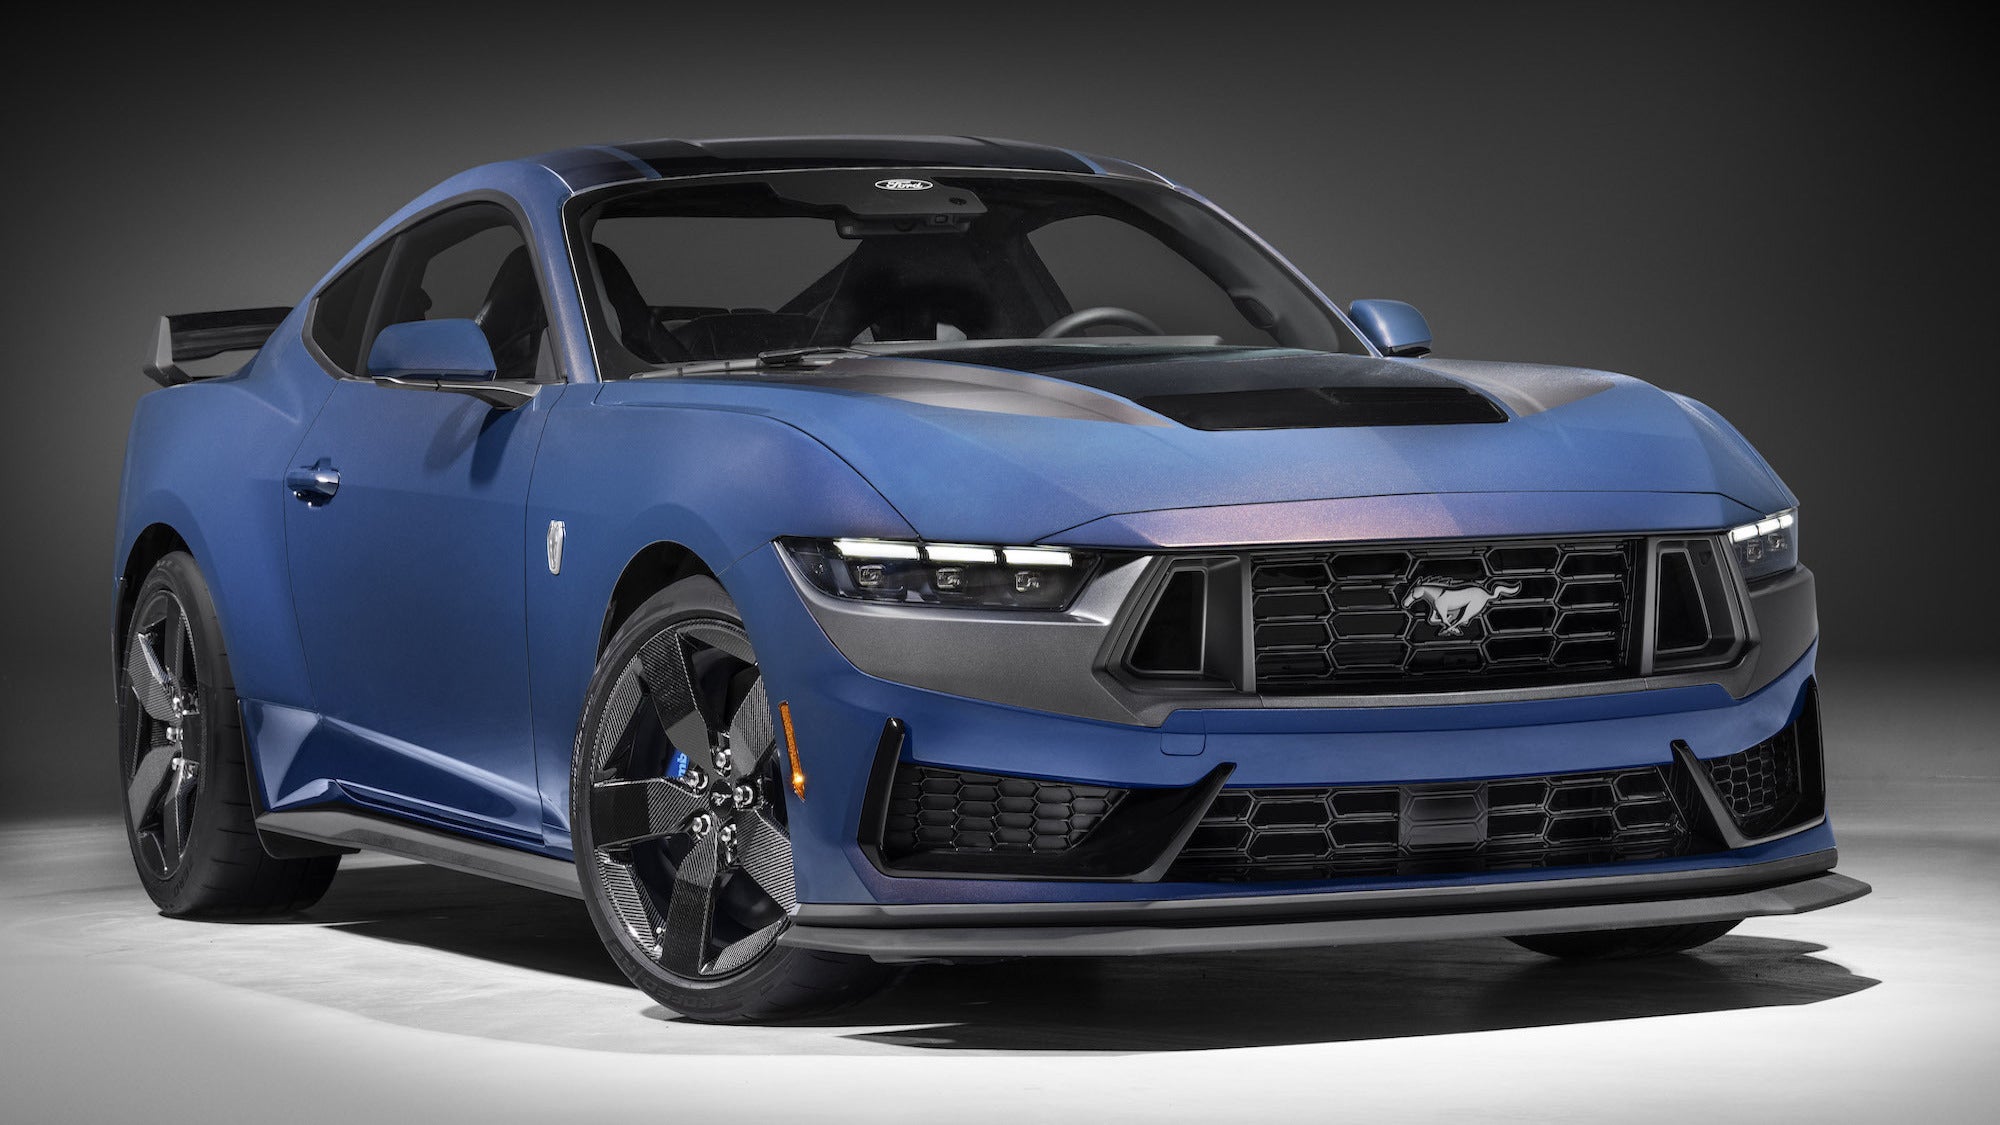 Echa un vistazo al nuevo Mustang Dark Horse de Ford